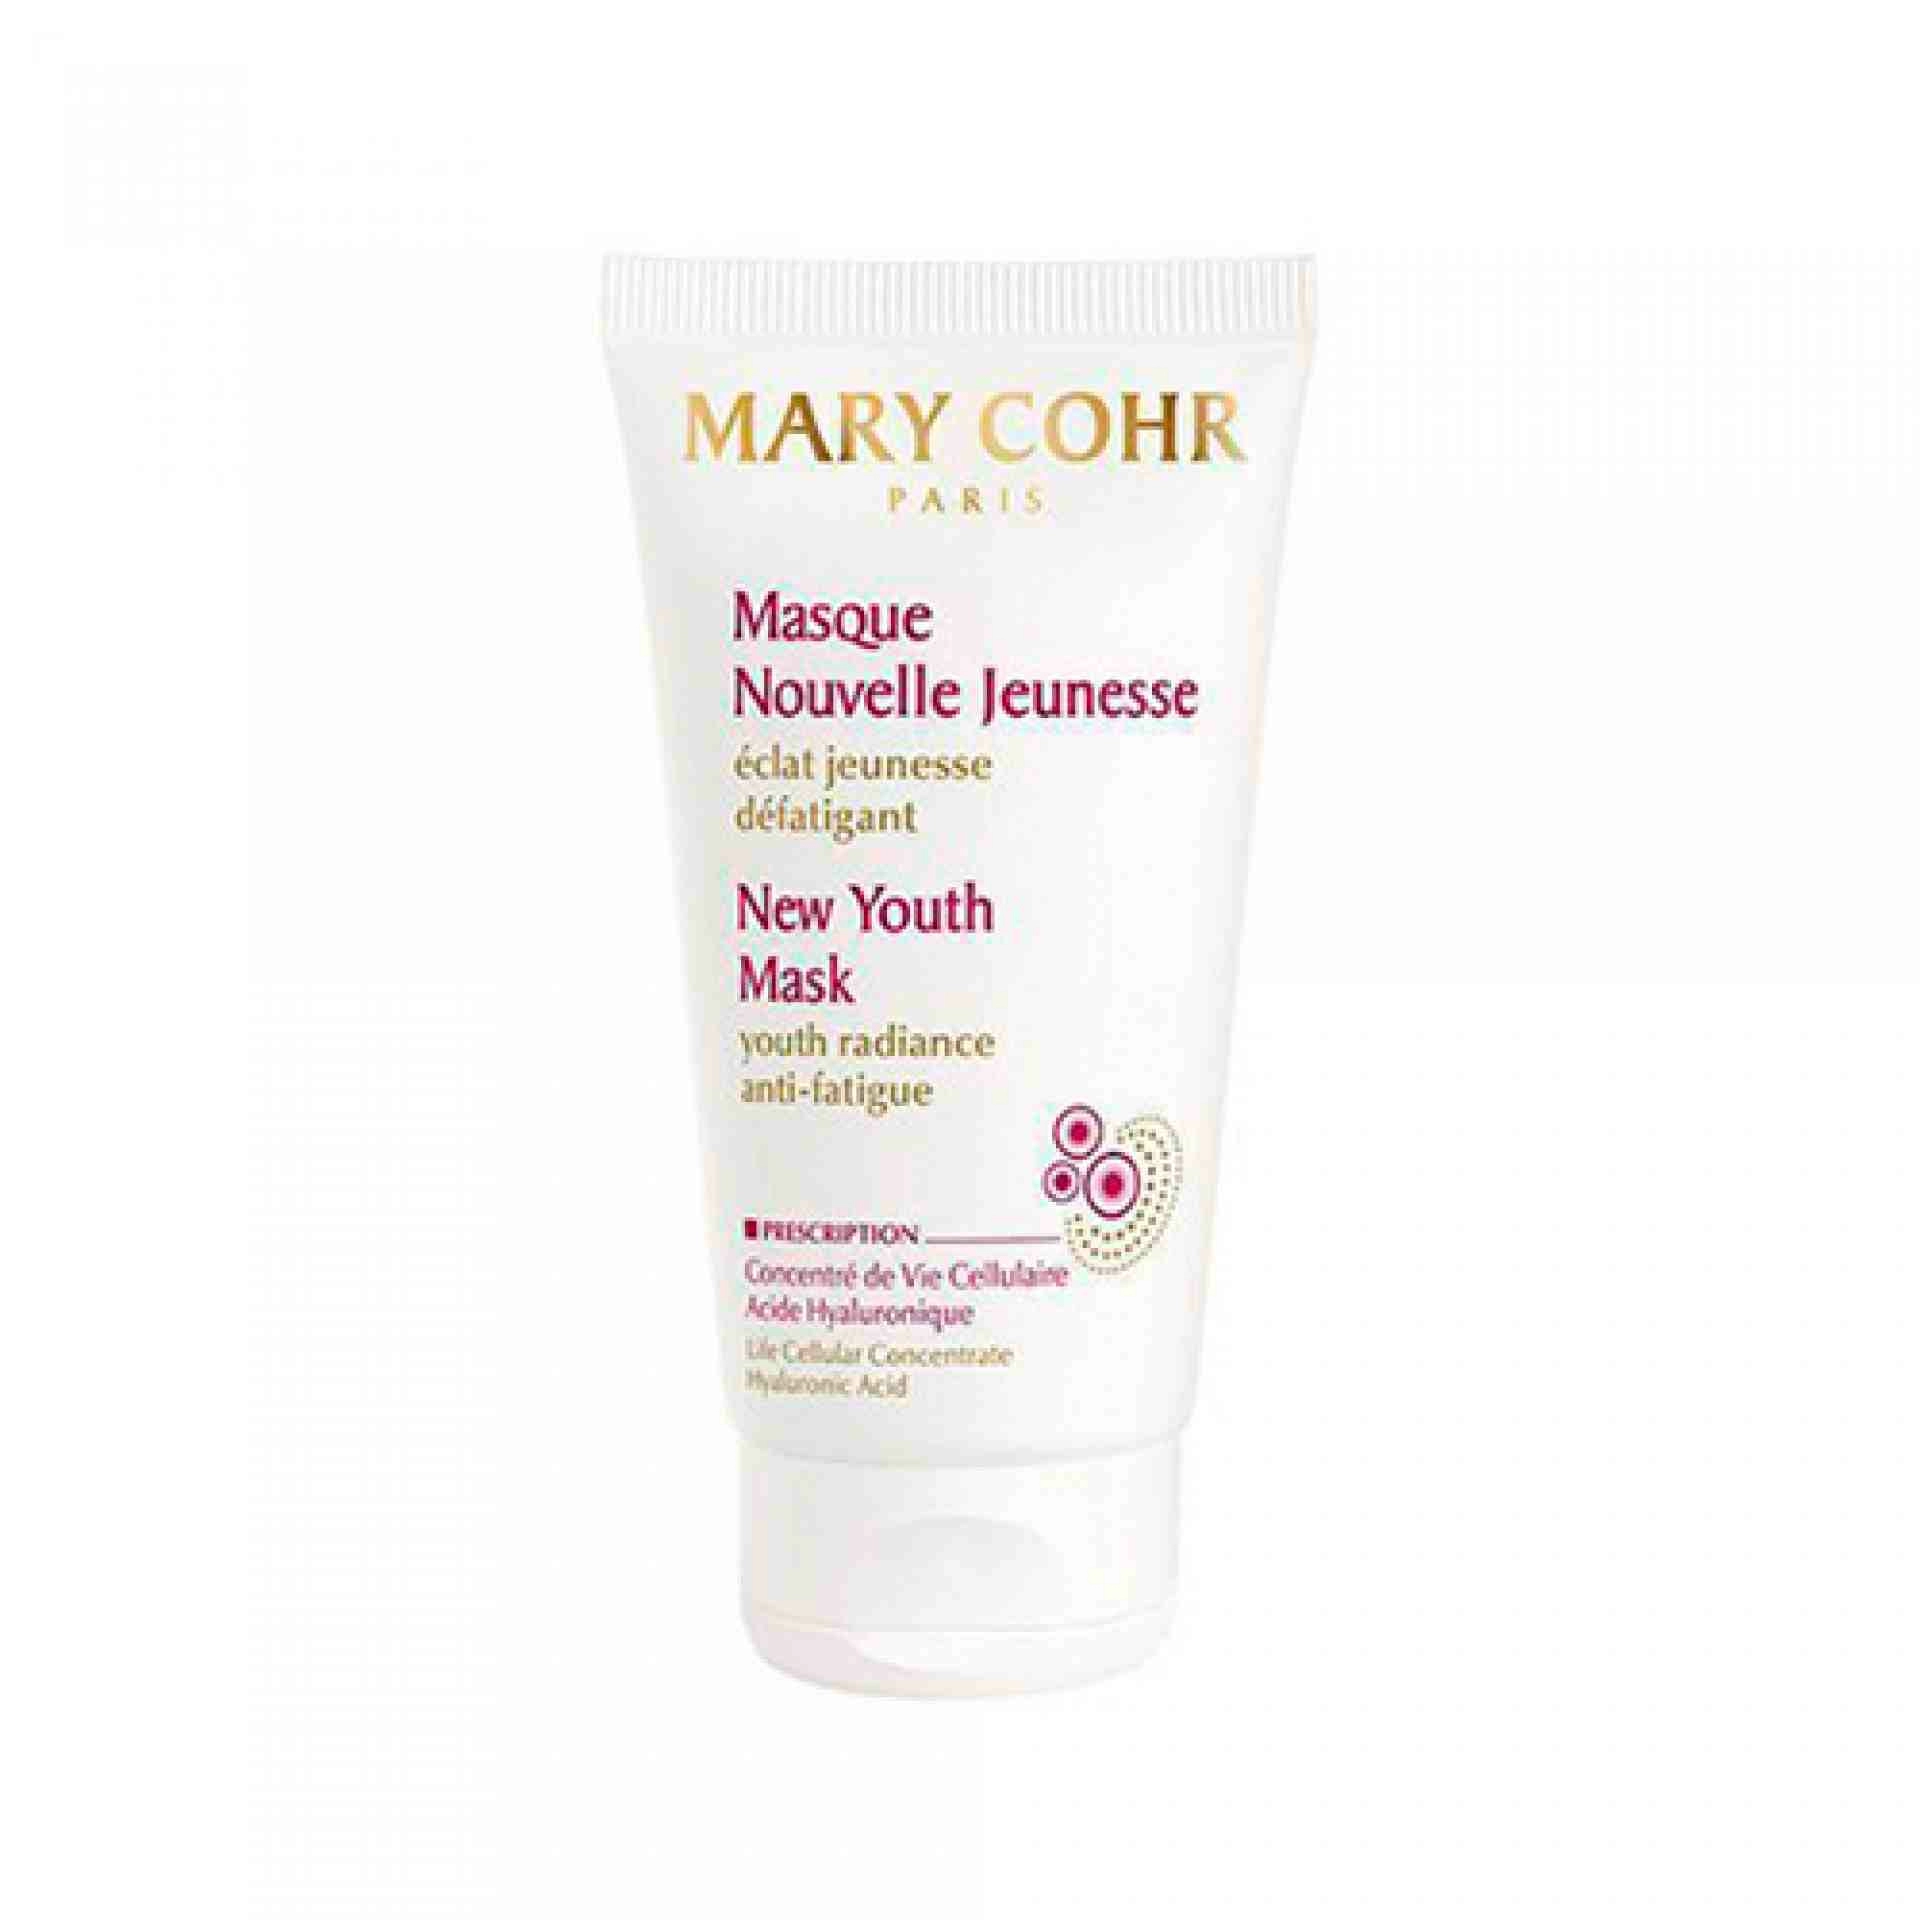 Masque Nouvelle Jeunesse | Mascarilla Revitalizante 50ml - Mary Cohr ®